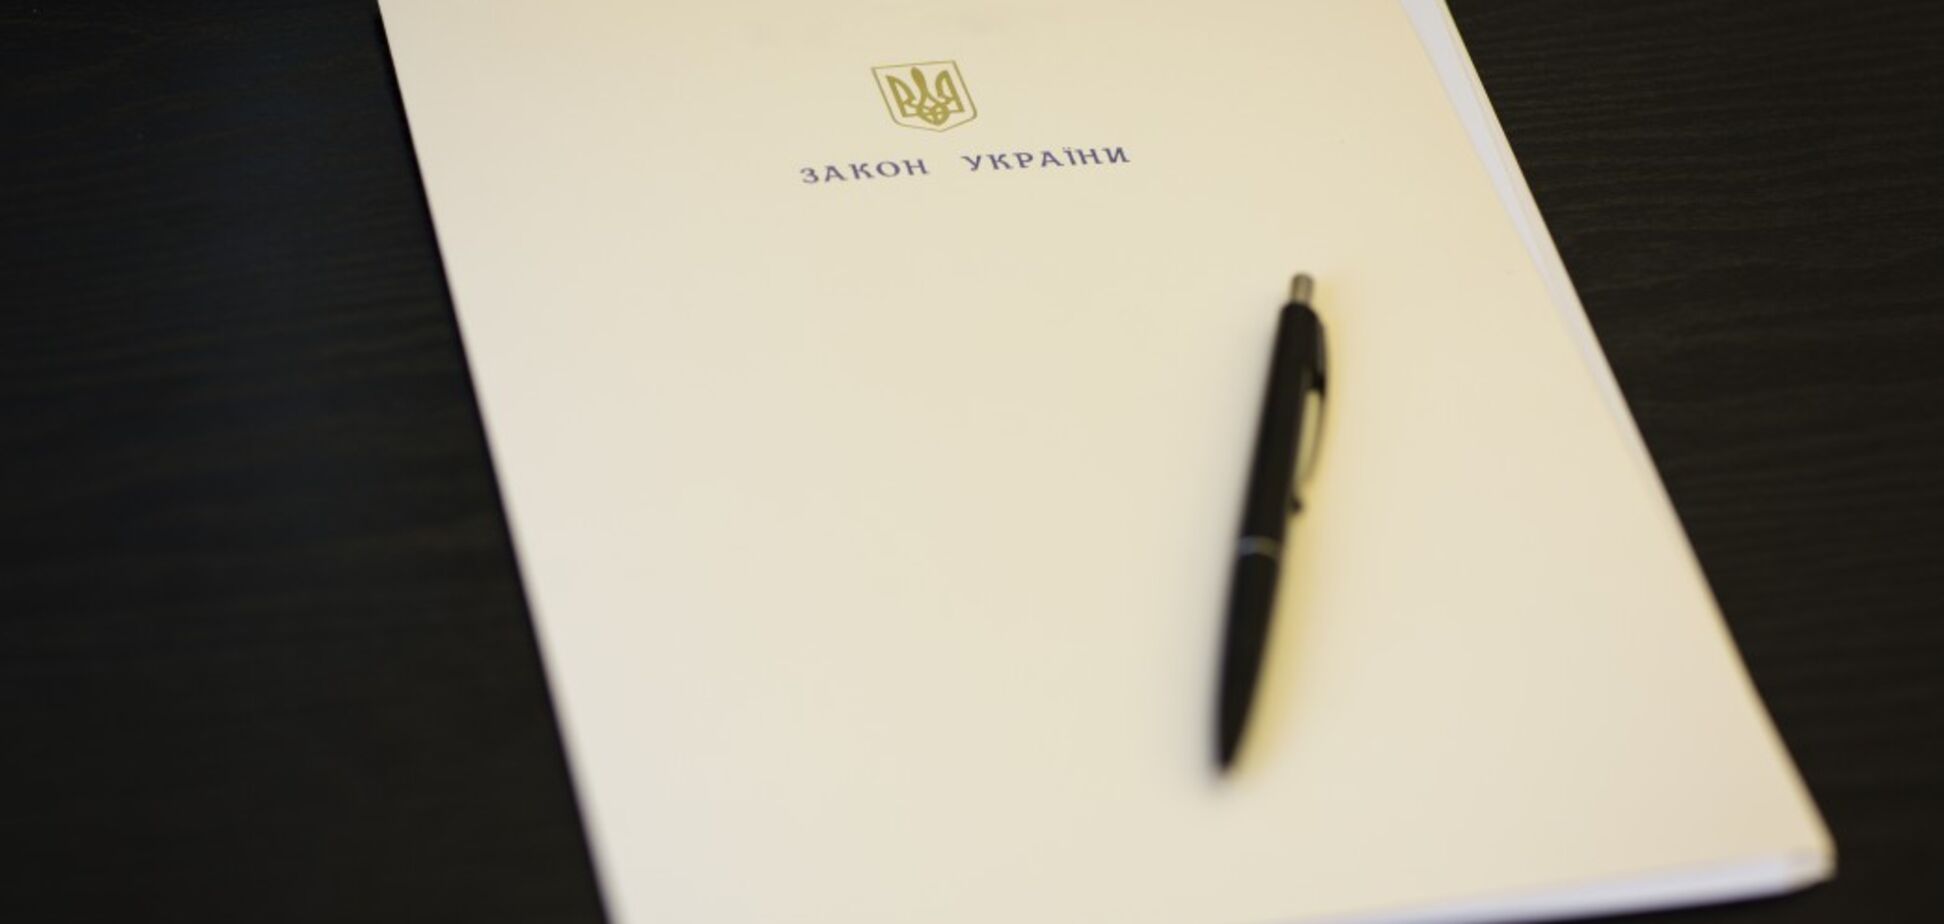 Порошенко підписав закон про посилення кордону: що це означає